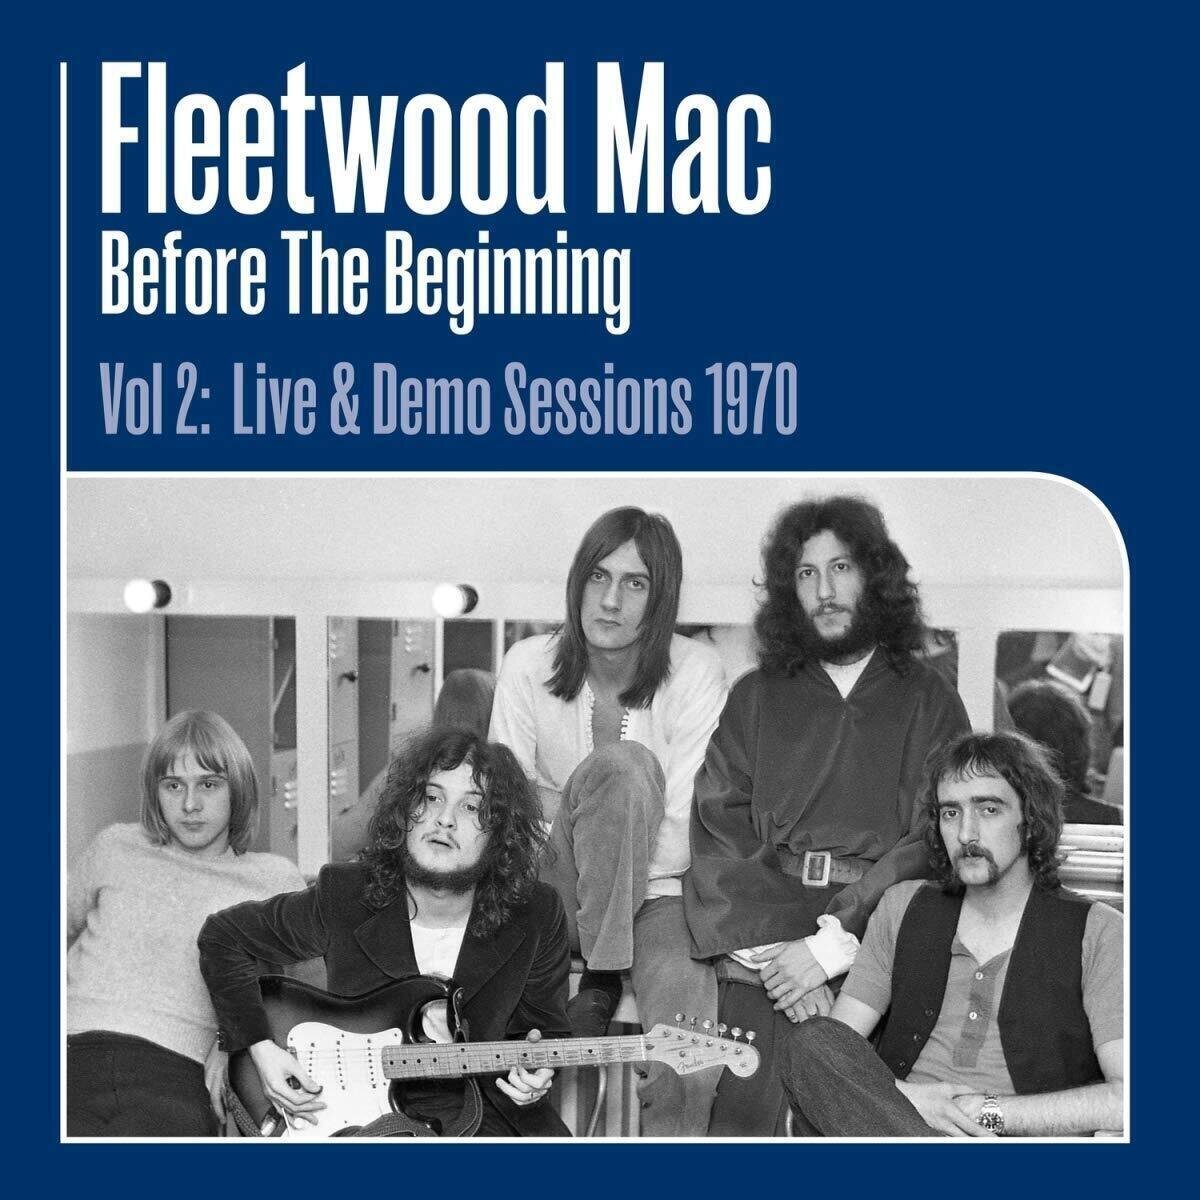 Vinyl Record Fleetwood Mac - Before The Beginning Vol 2:1970 (3 LP)